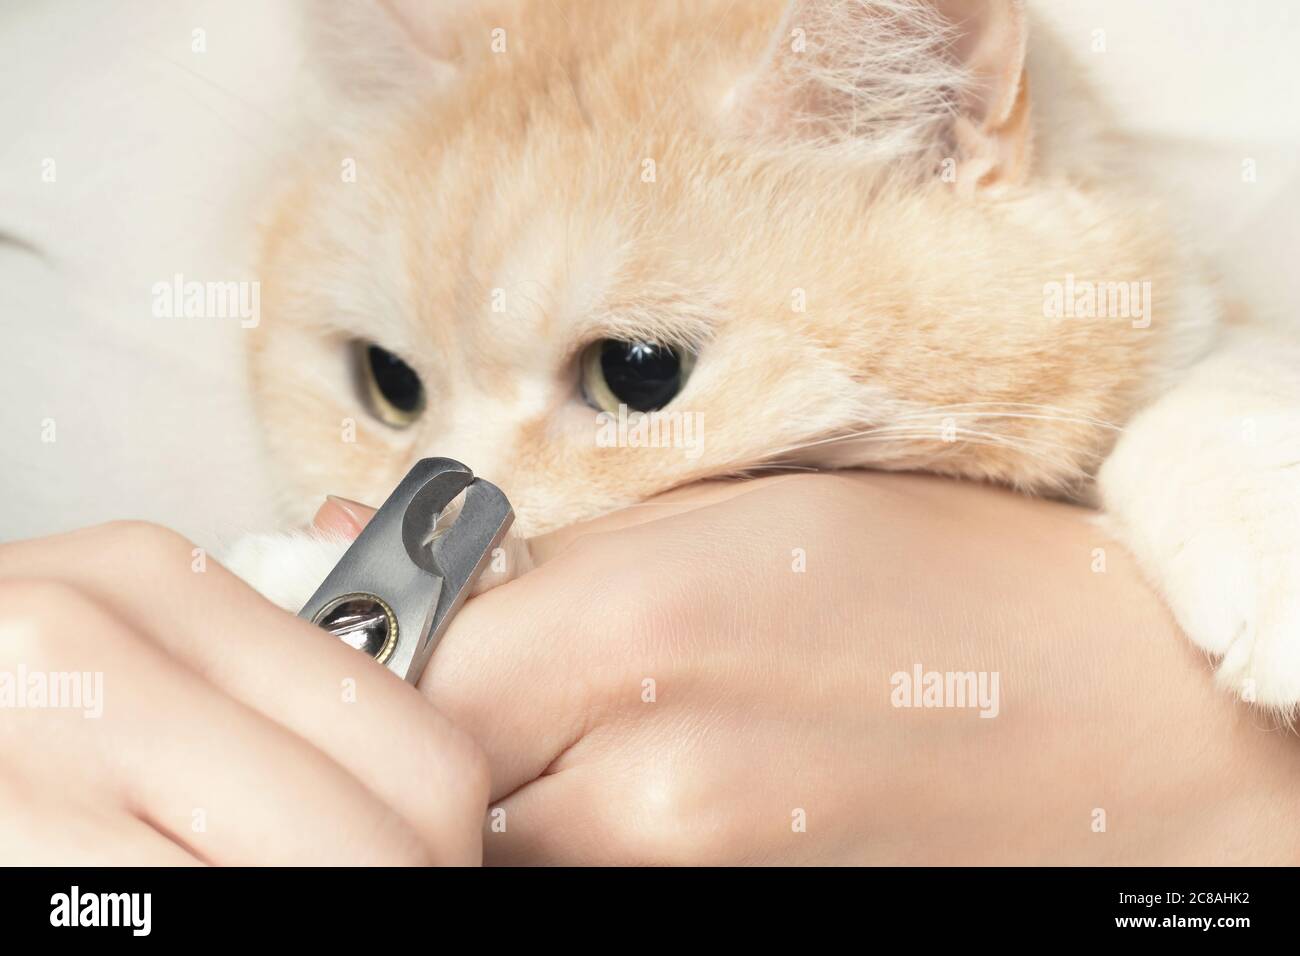 Schneiden Sie die Krallen einer niedlichen cremigen britischen Katze. Haustierpflege, Pflegekonzept Stockfoto